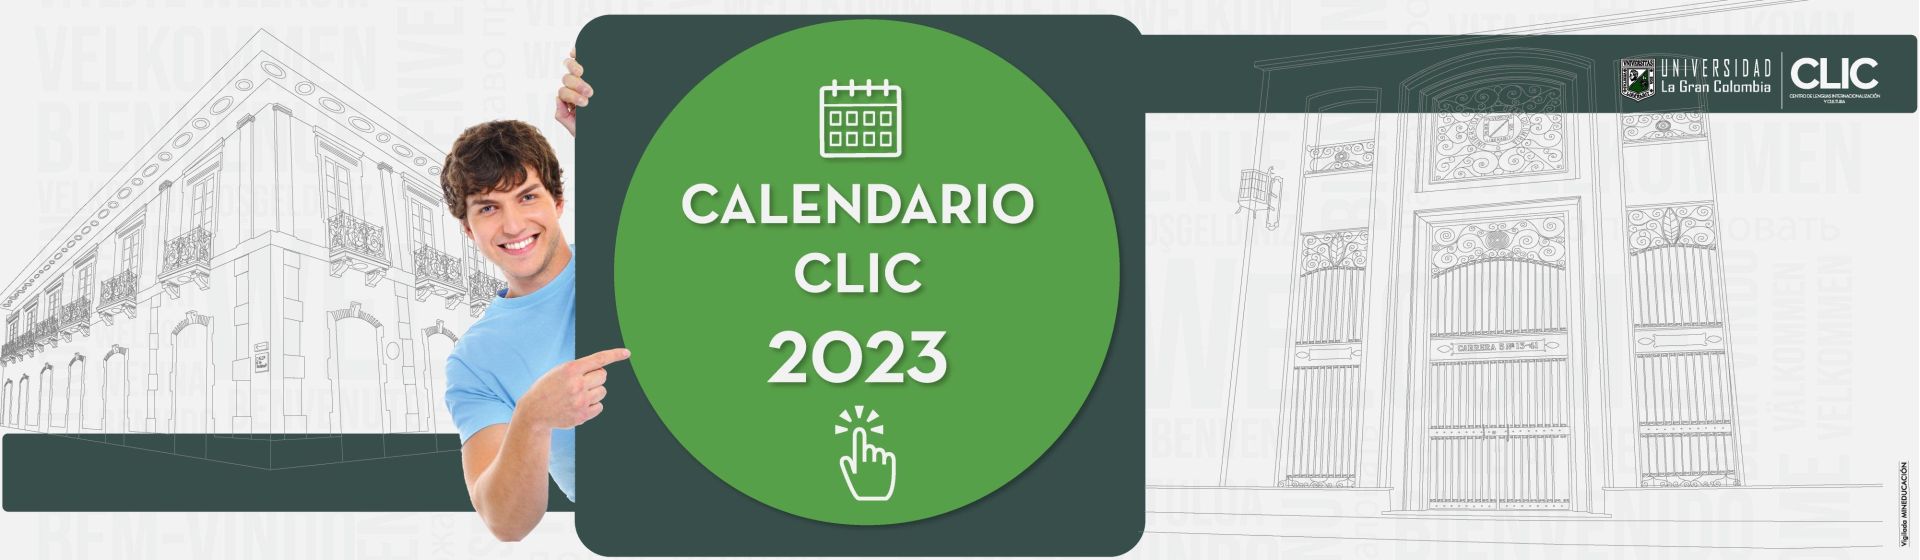 Ver calendario CLIC 2023